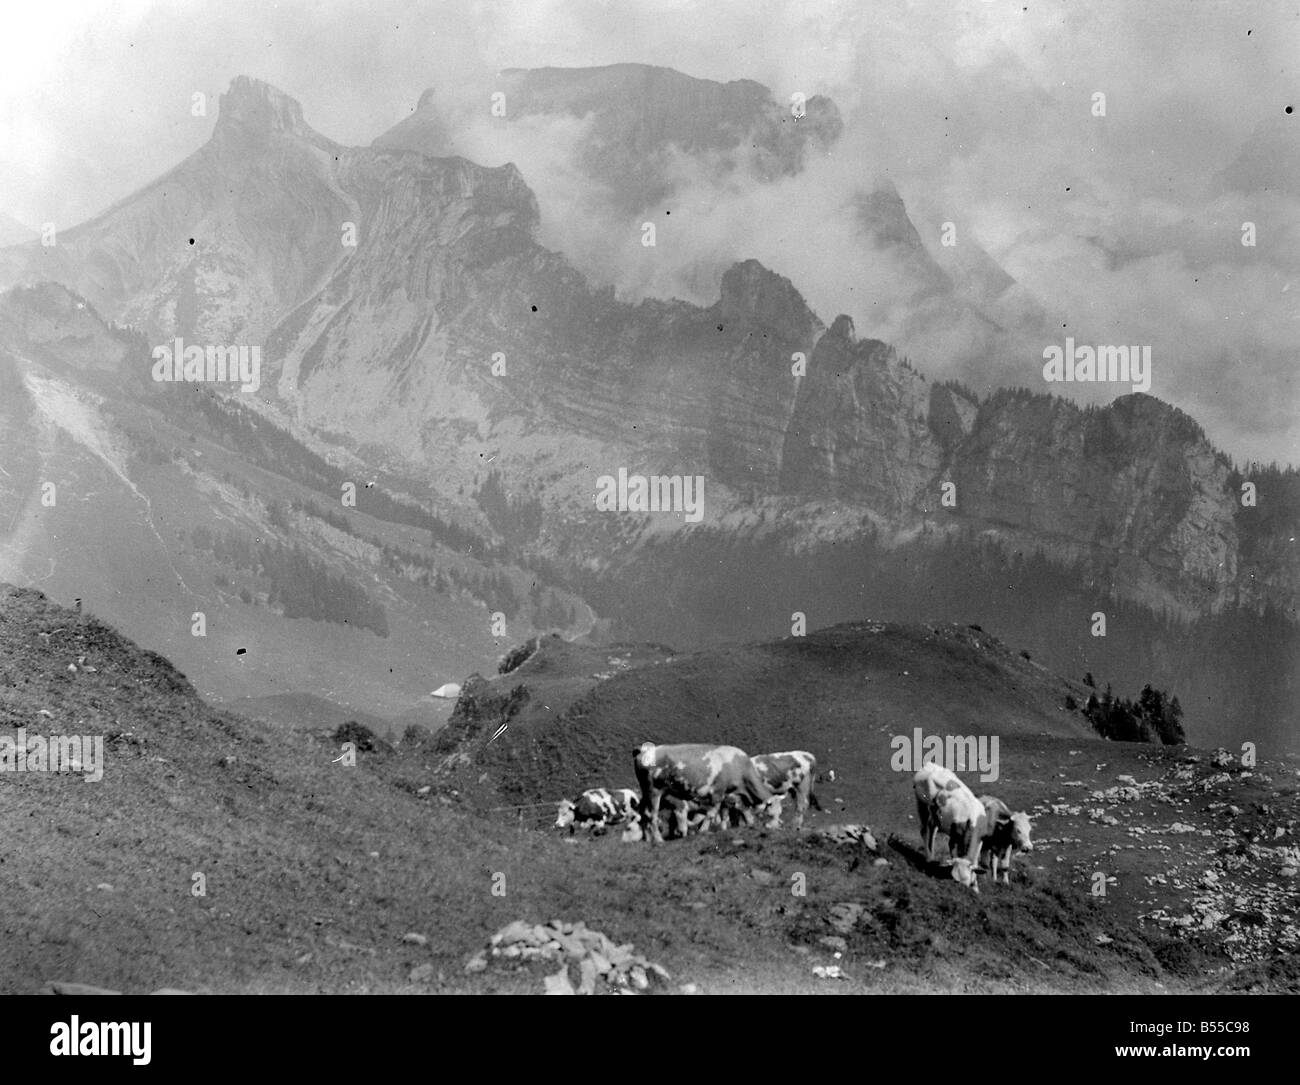 Le bétail sur les pentes de la montagne en Suisse Schynige Platte à&# 13 ;&# 10;Août 1929 &# 13 ;&# 10;Alf 185 Banque D'Images